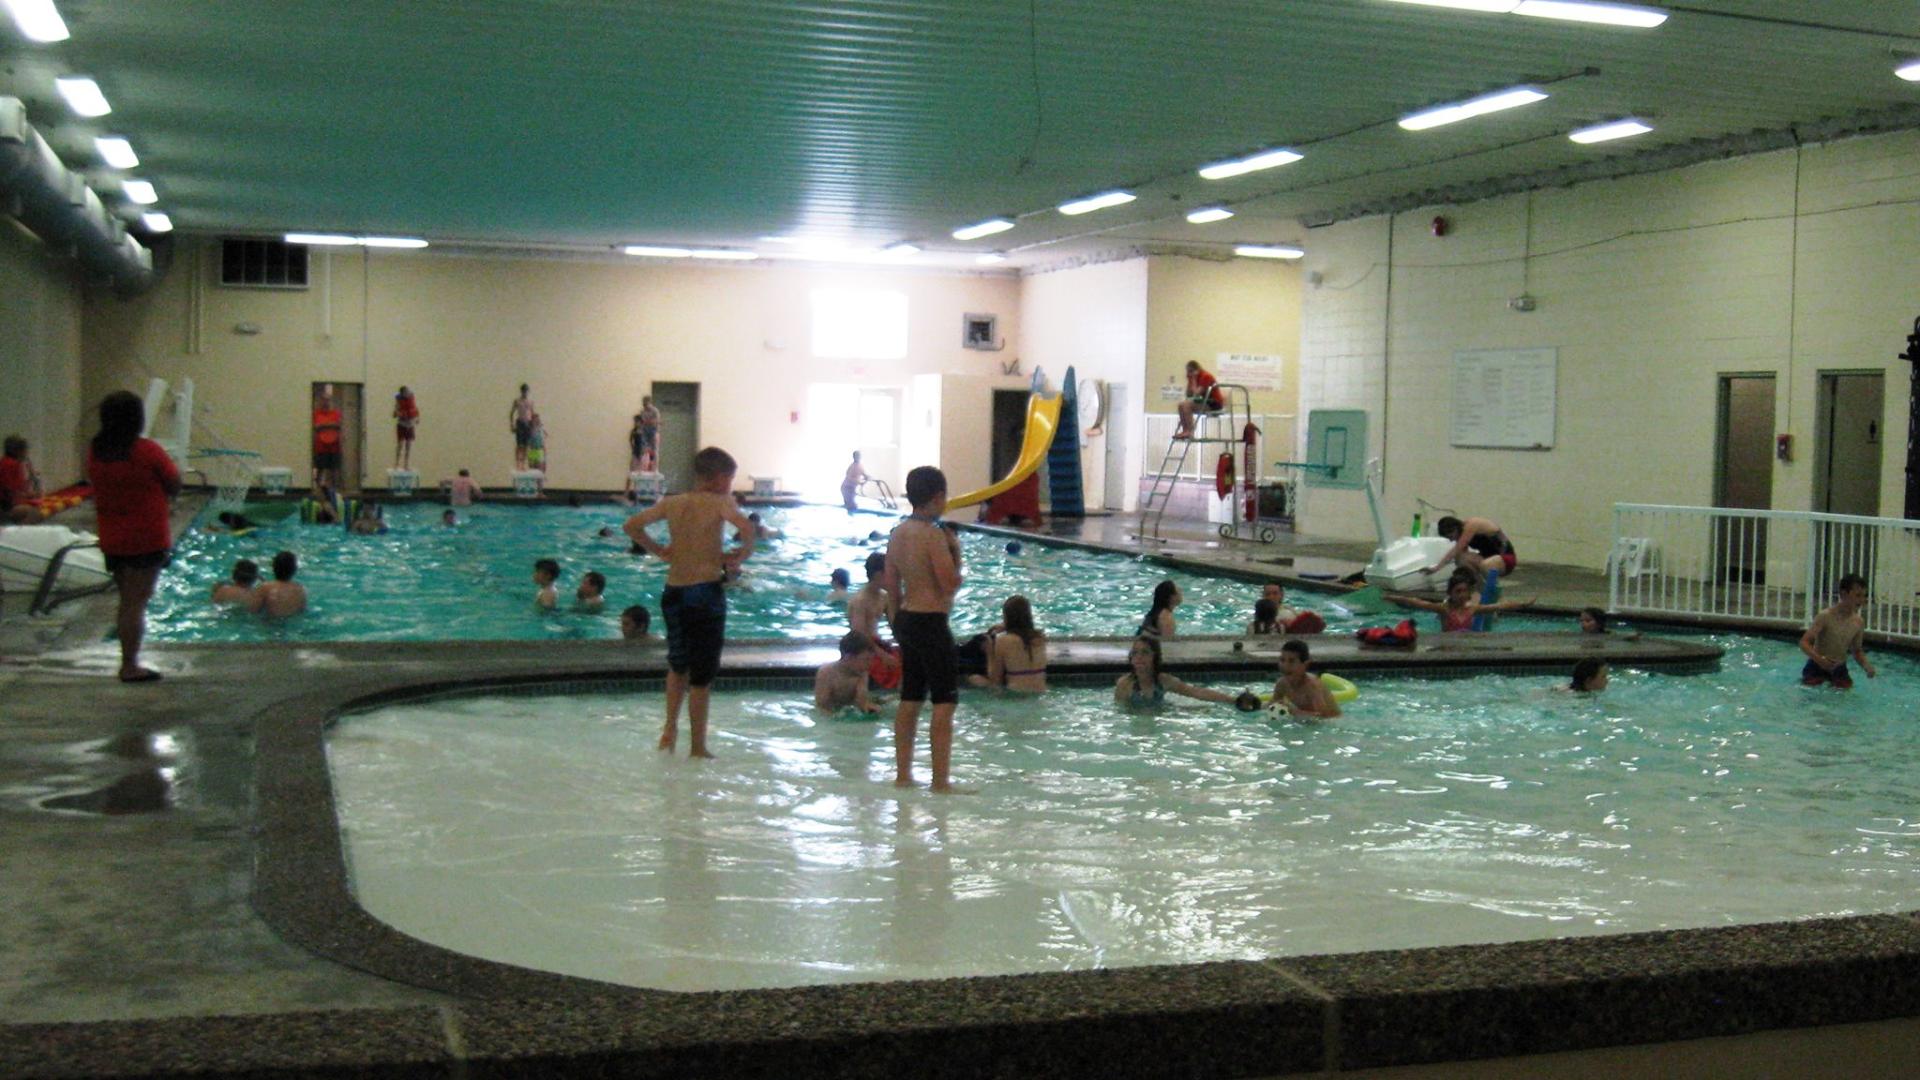 People in public pool